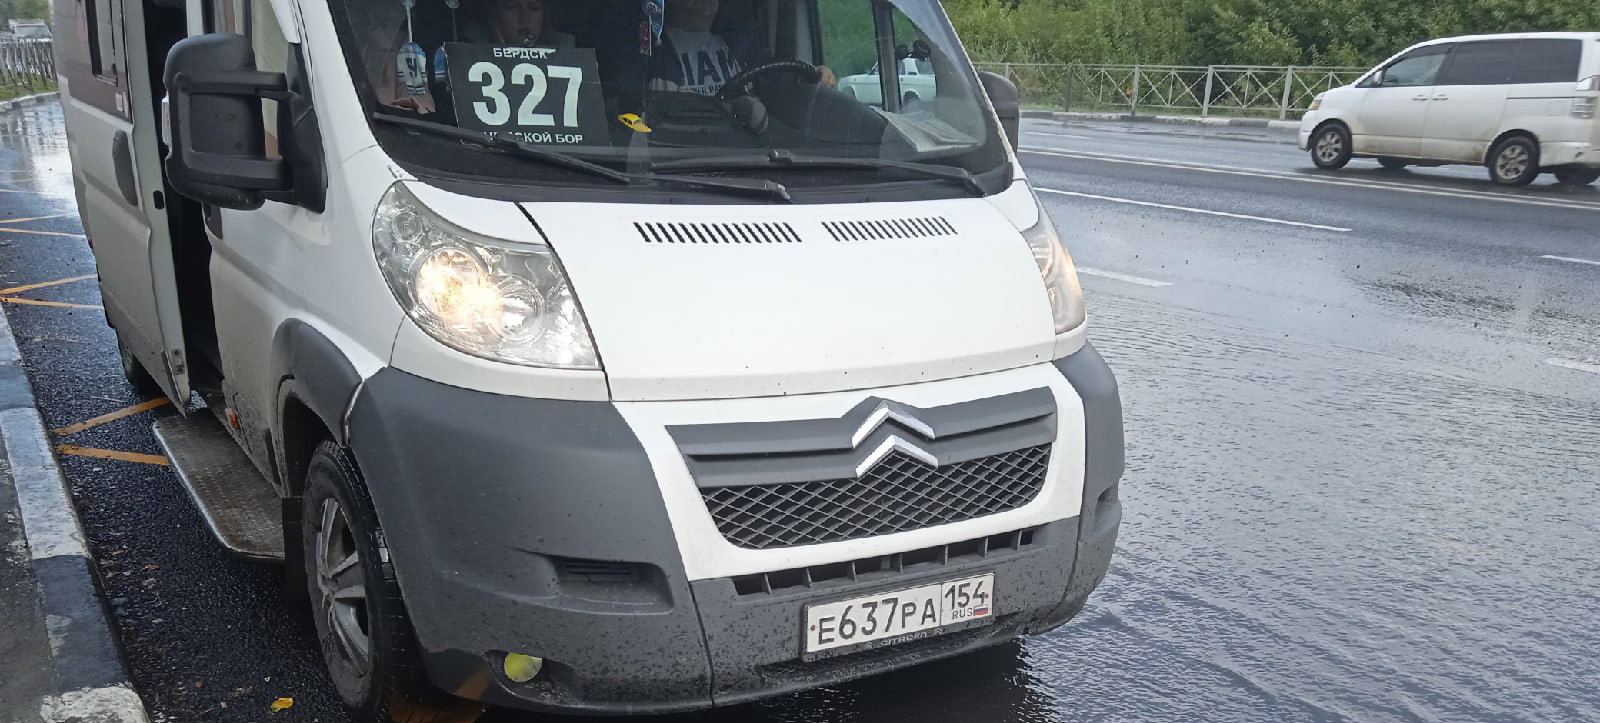 Пассажирка маршрутки в Новосибирске пожаловалась на грубость водителя